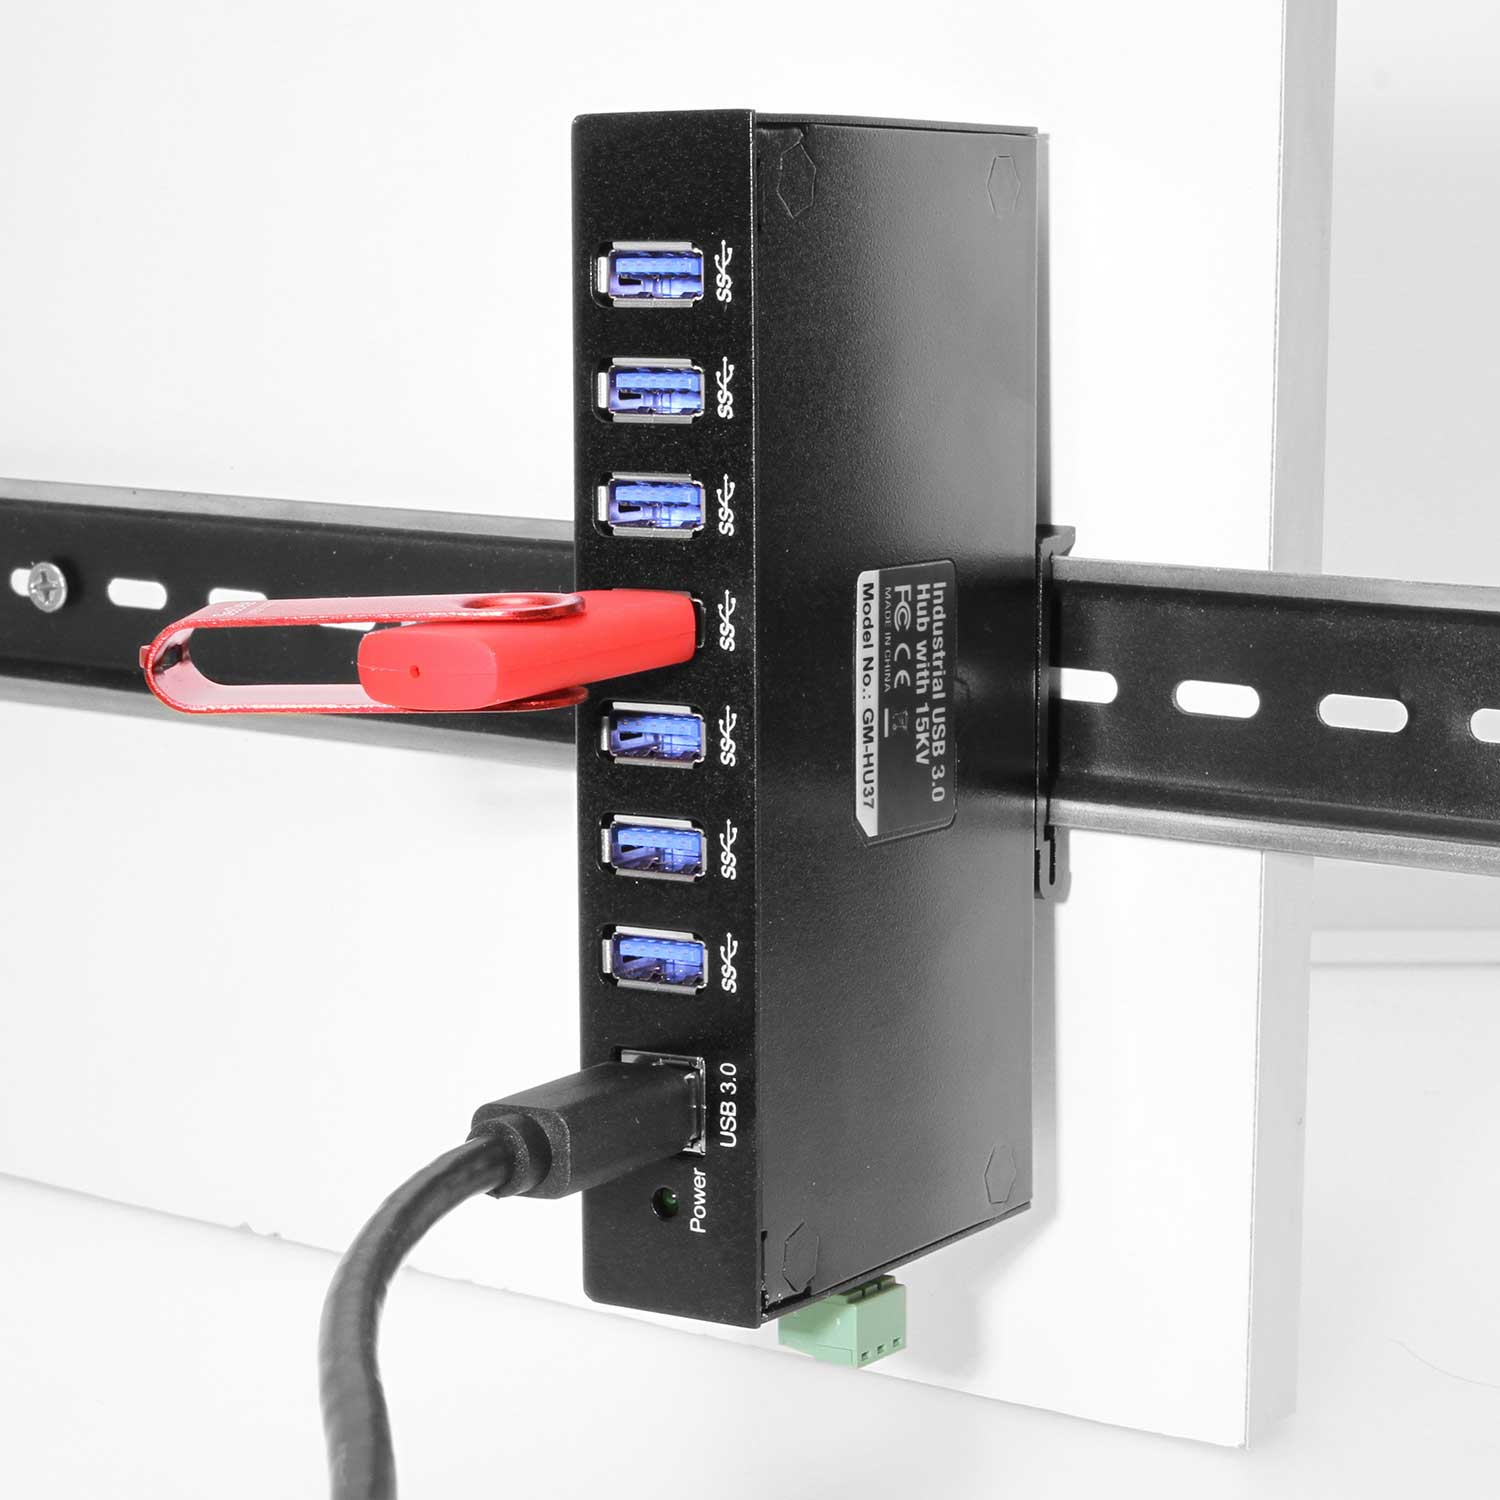 Versterken Fabel Menstruatie 7-Port USB 3.0 Din Rail Mountable Hub Metal Chassis